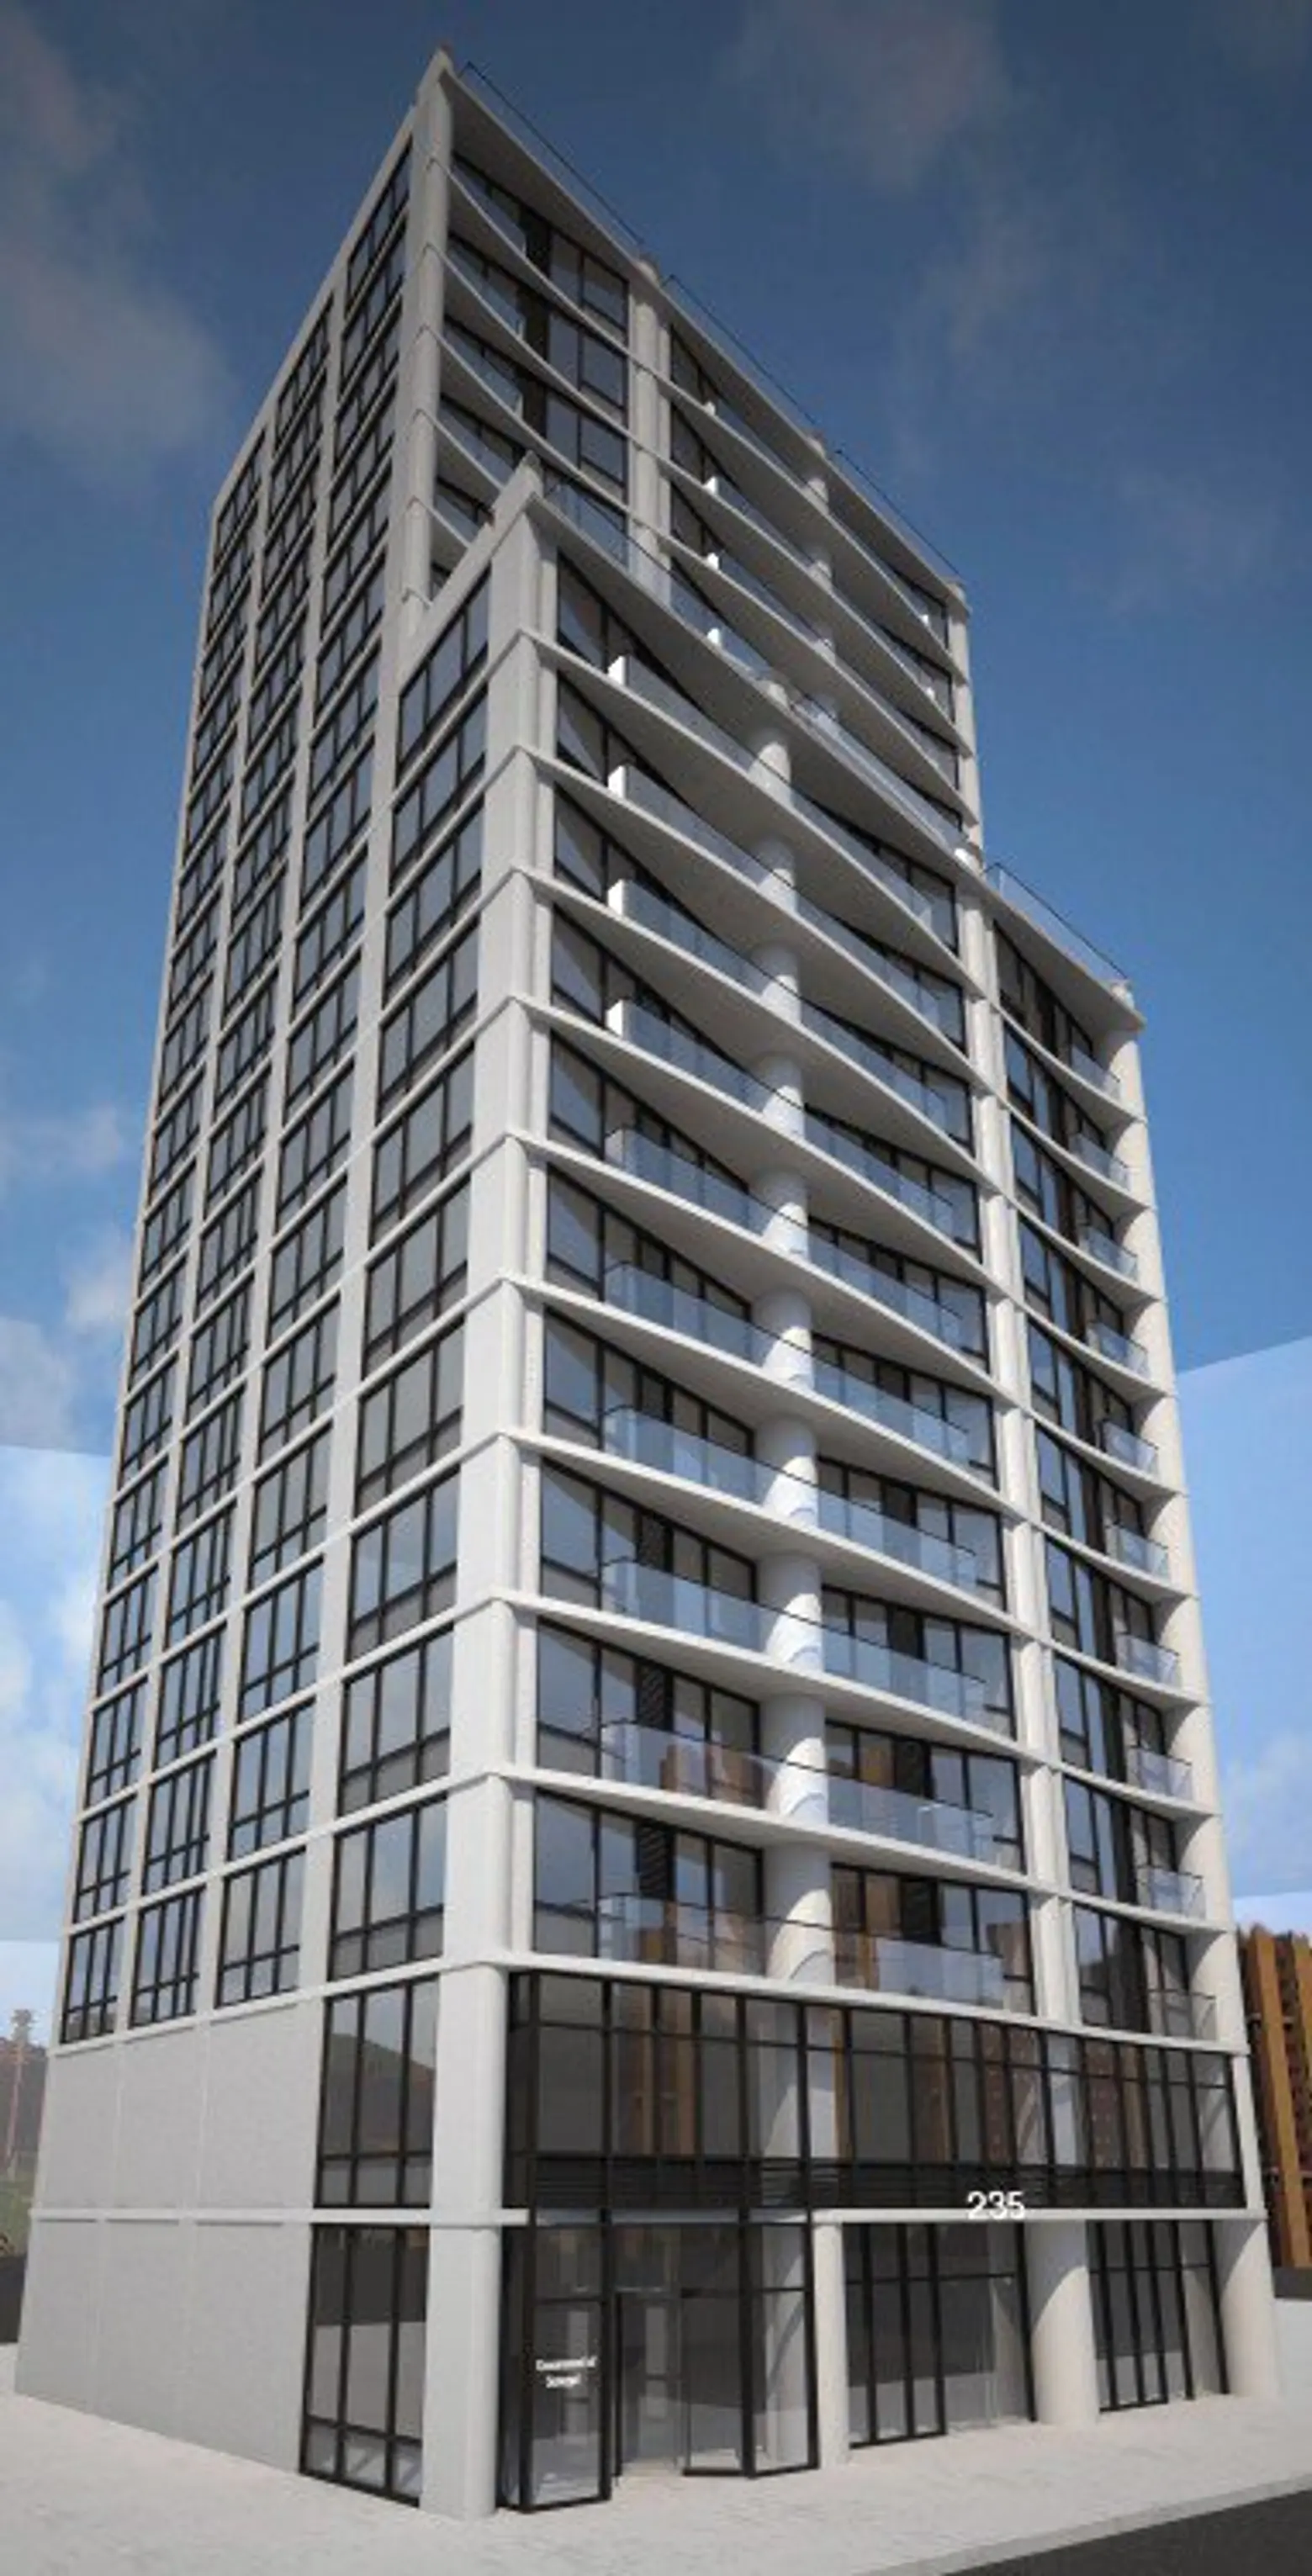 Leasing Begins at Neo-Brutalist Rental Tower in Midtown East